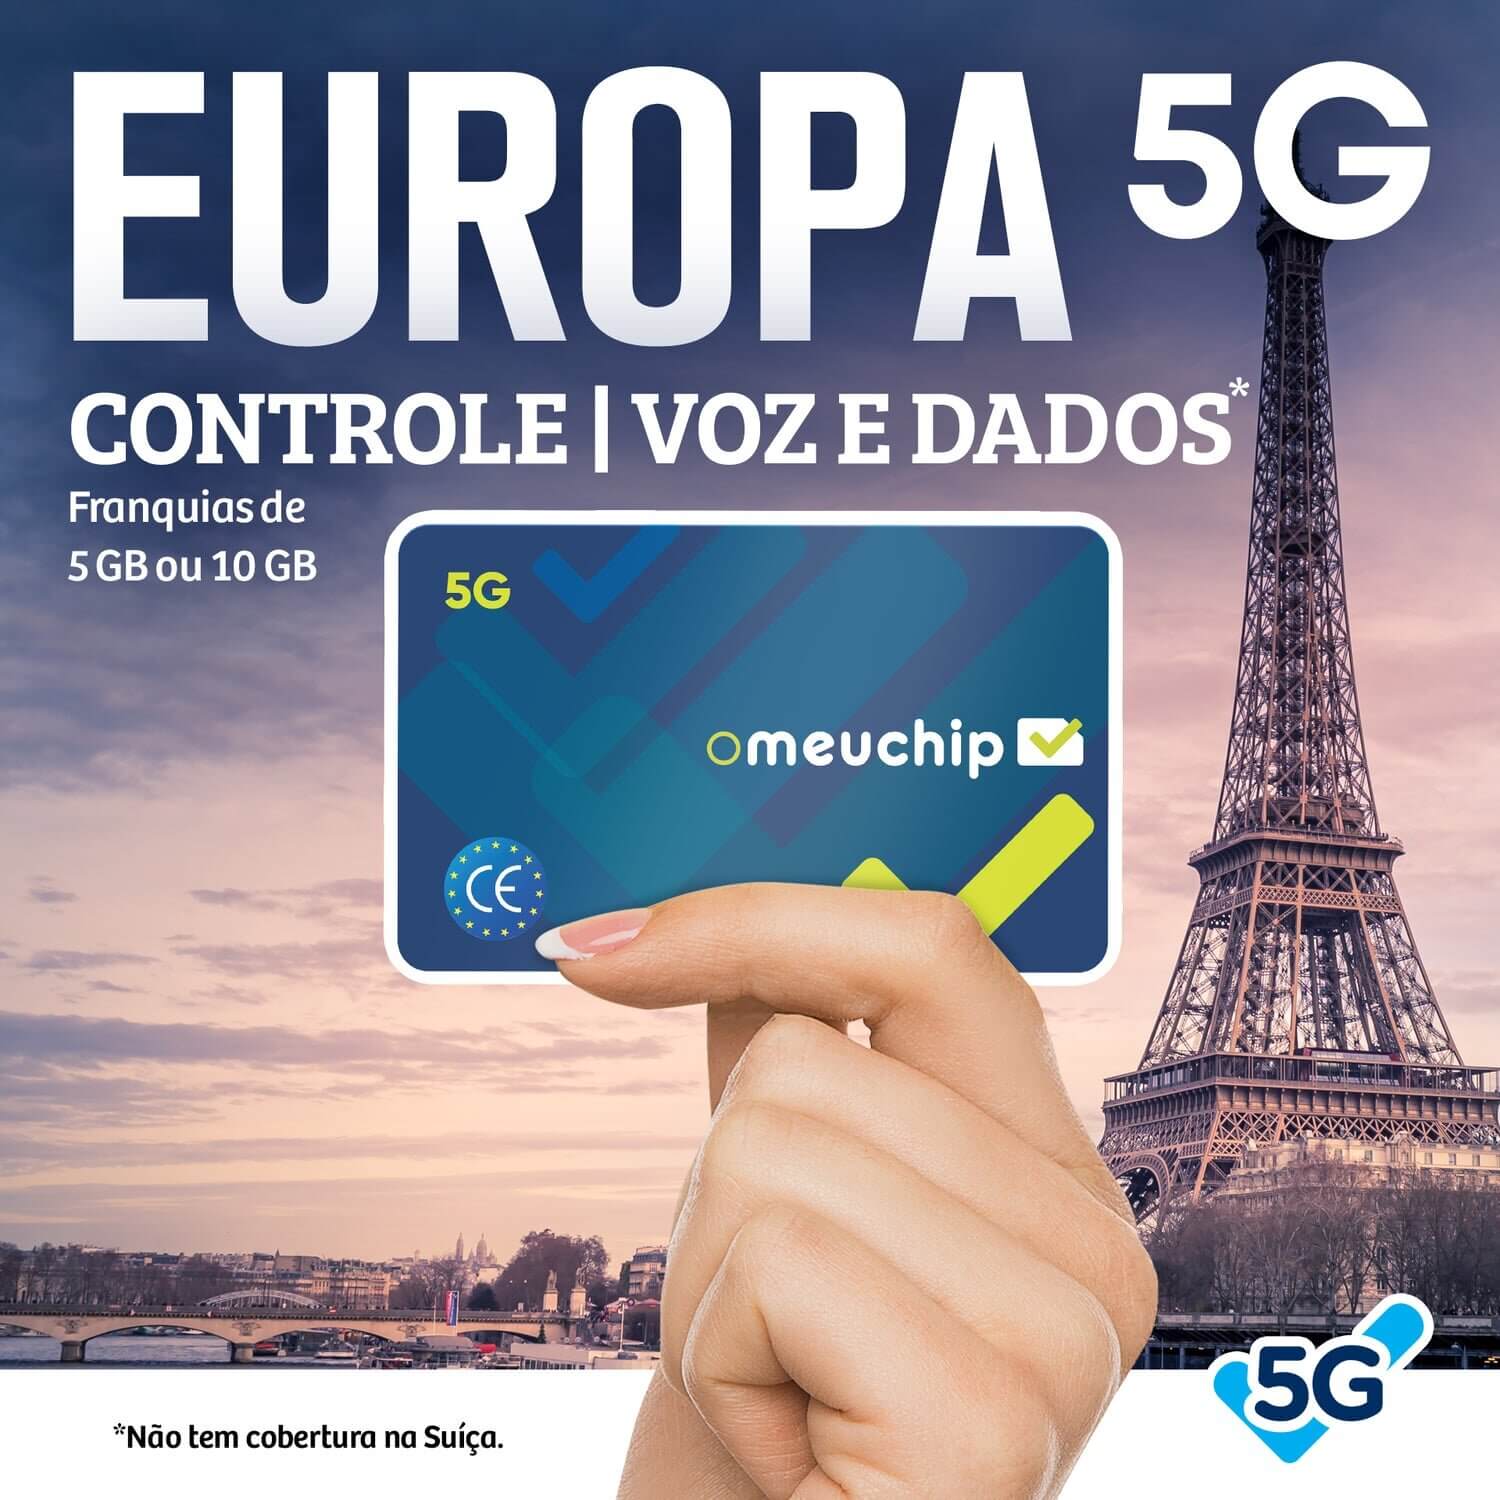 Banner Omeuchip Europa 5G Controle, Voz e Dados, e ao fundo a torre Eiffel